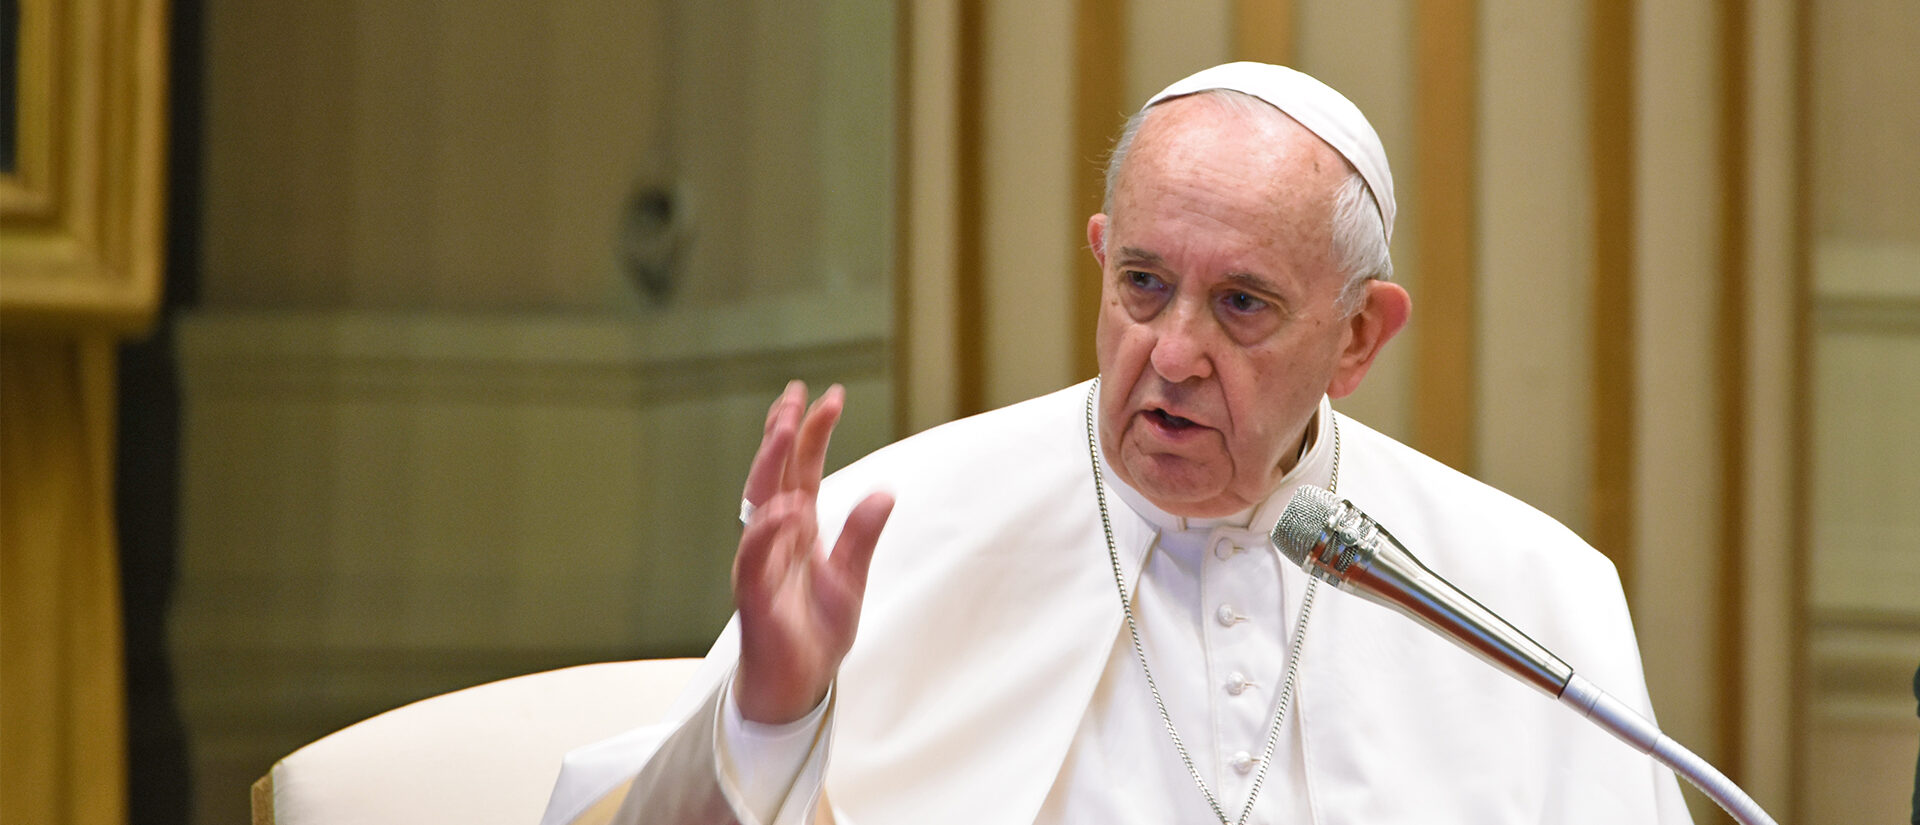 La véritable pensée du pape a-t-elle été respectée?  | © Grégory Roth